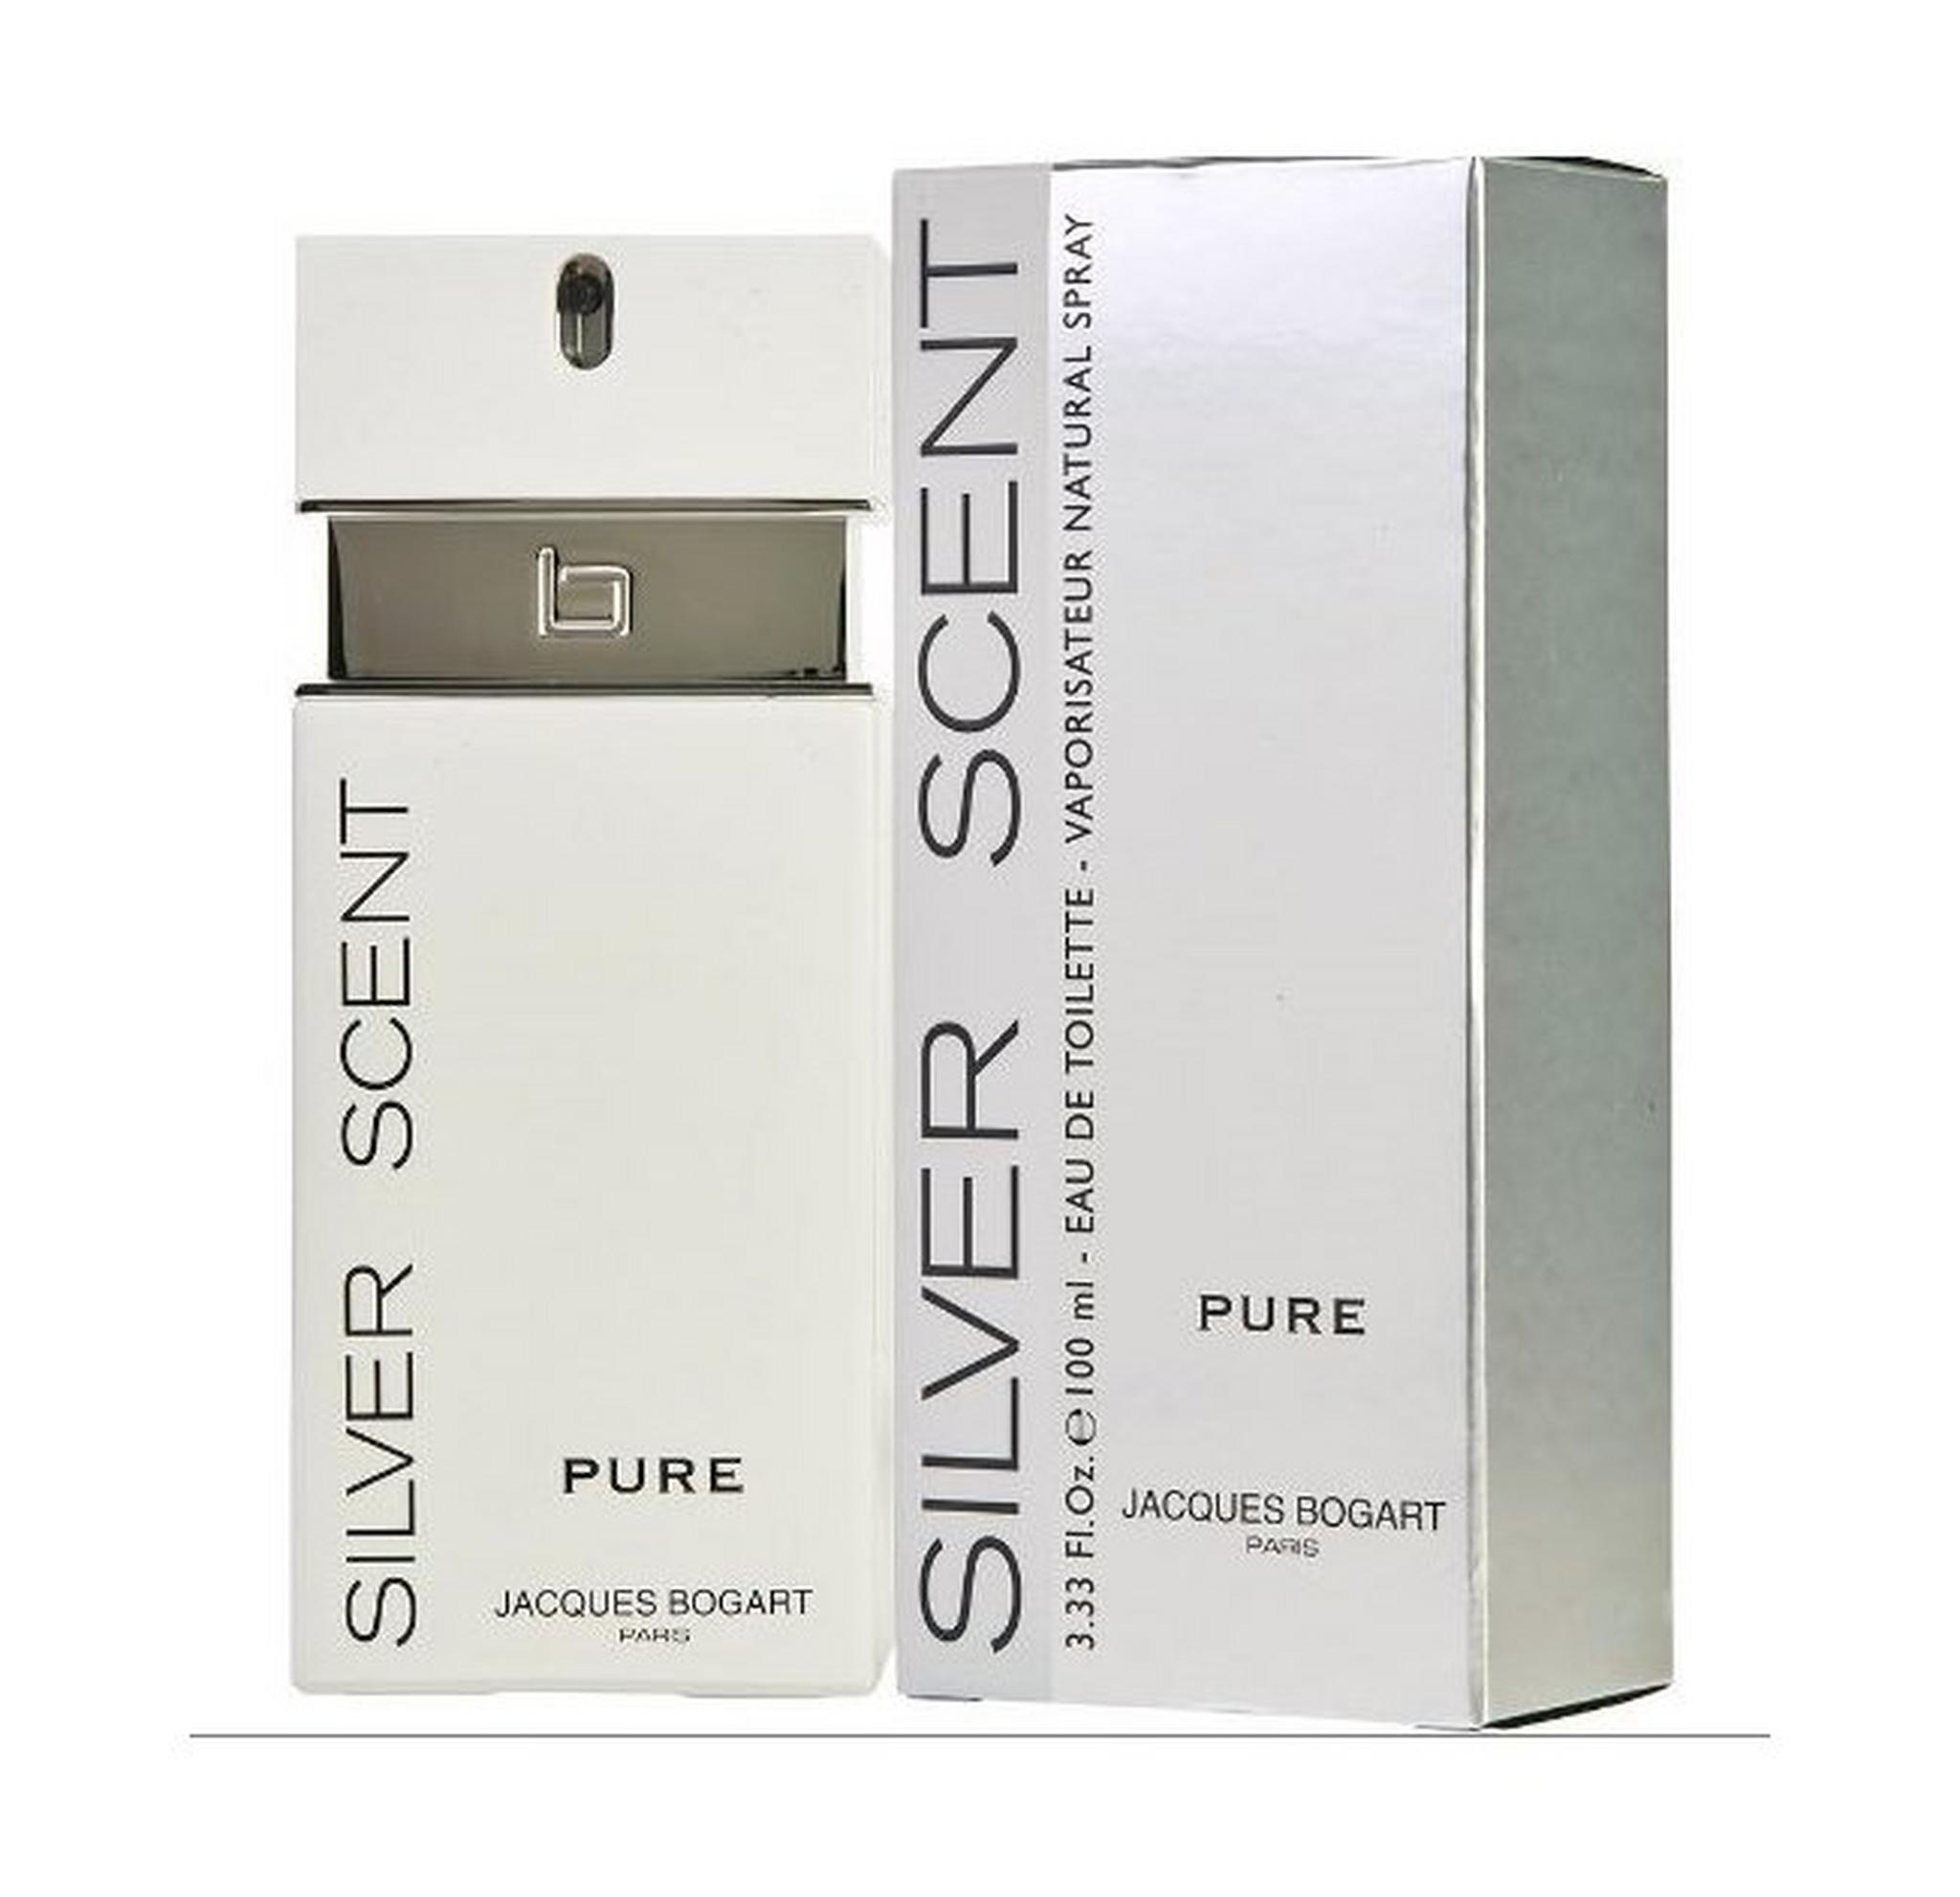 Silver Scent by Jacques Bogart Pure For Men 100ml Eau de Toilette